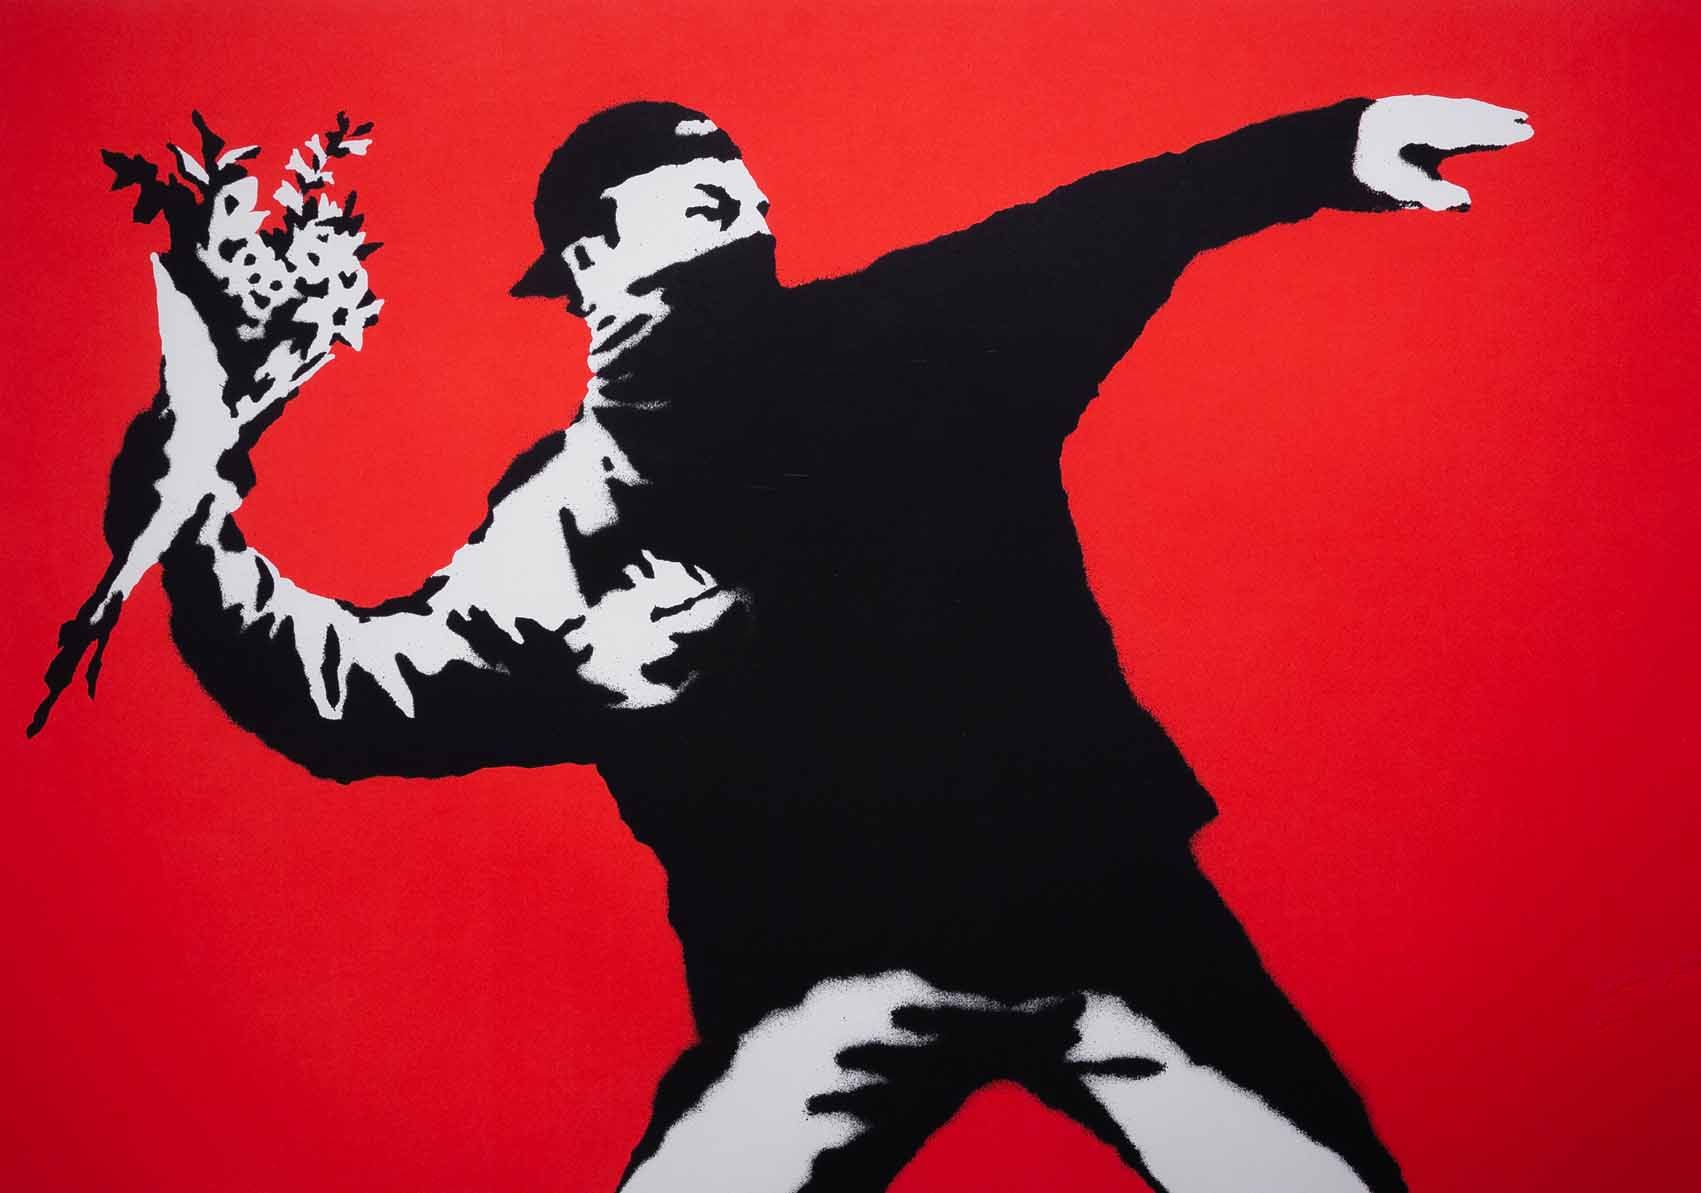 El misterioso y siempre polémico Banksy, en el Círculo de Bellas Artes de Madrid